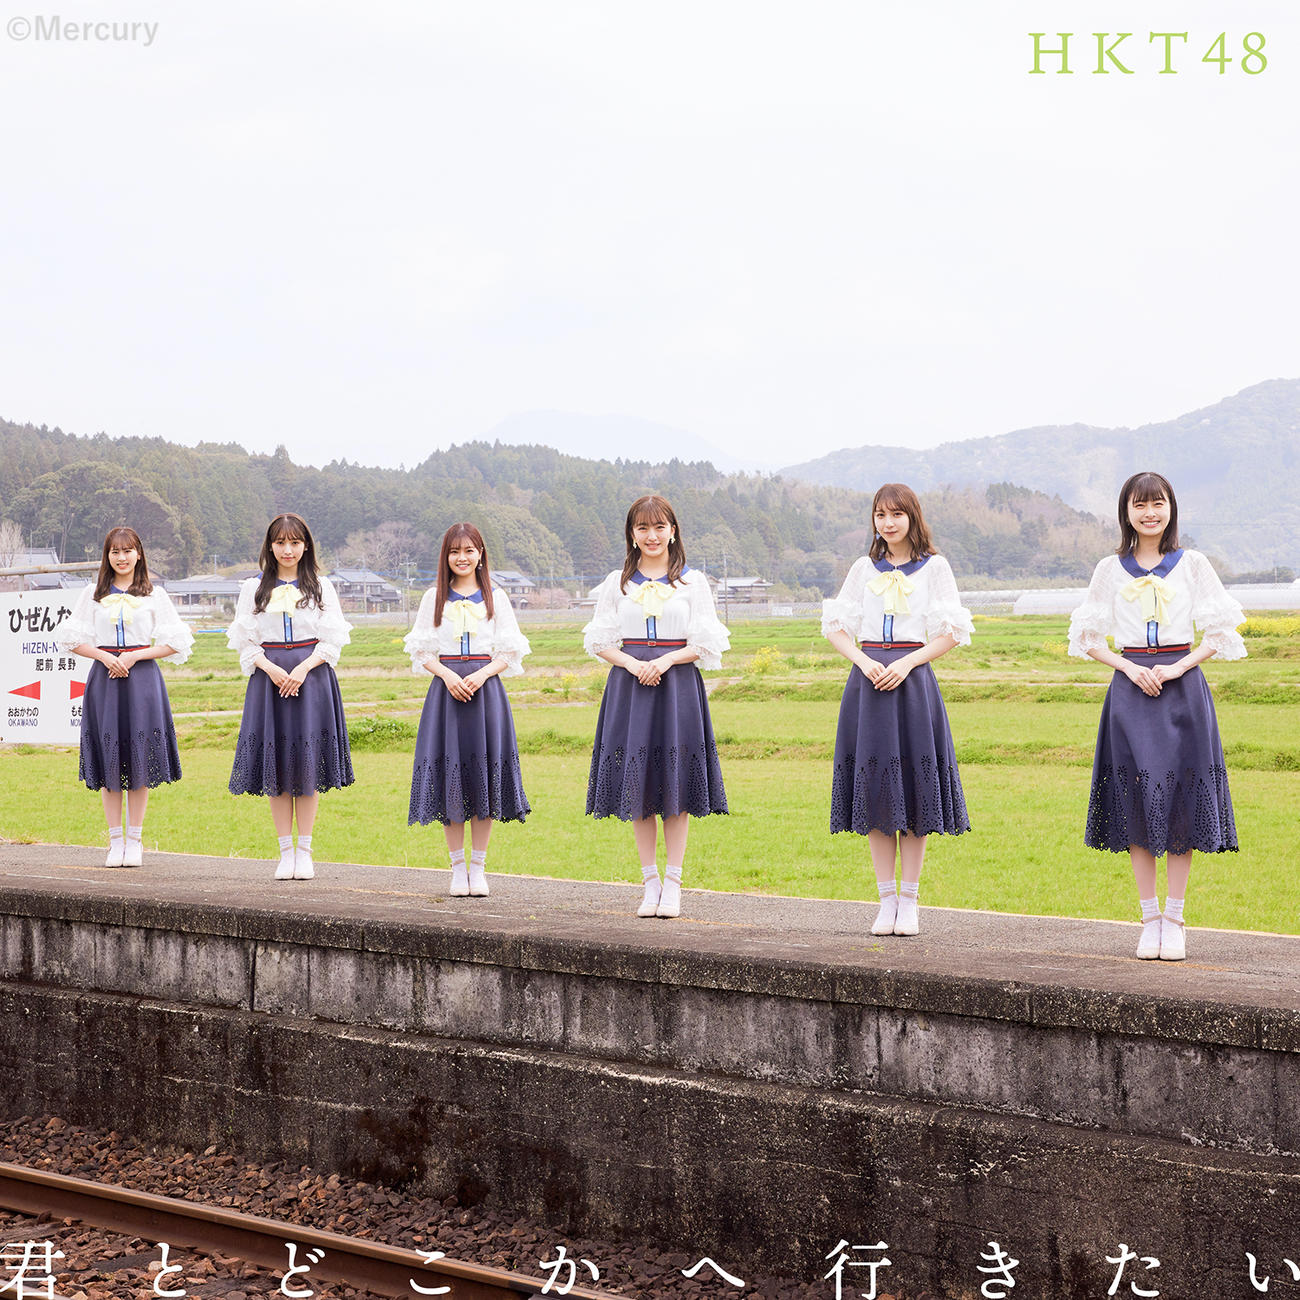 HKT48「君とどこかへ行きたい」Type B　(C)Mercury